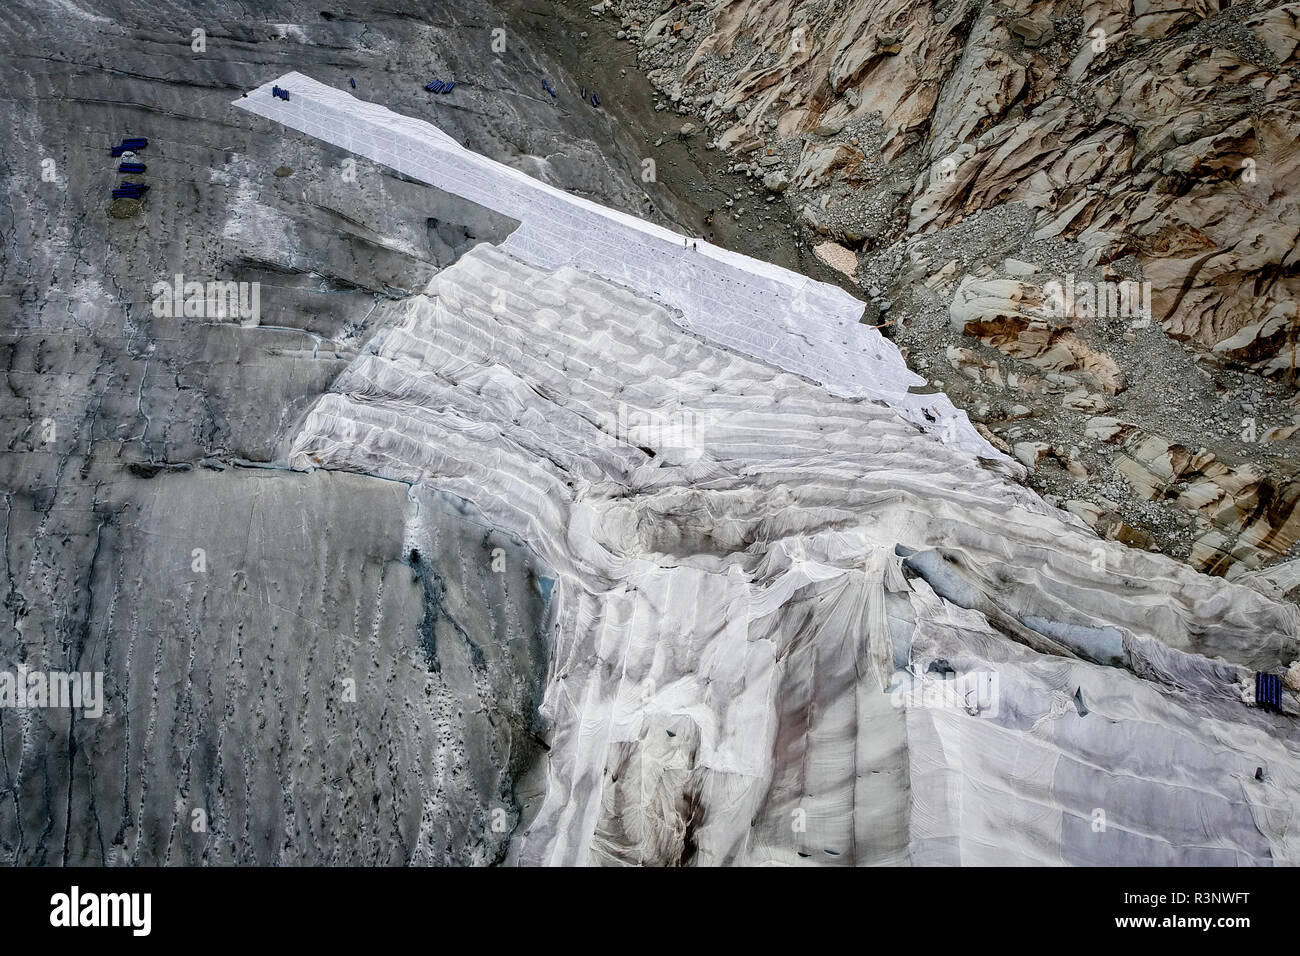 Enormi fogli con coperte in feltro coprono un tunnel di ghiaccio alla foce del Ghiacciaio del Rodano in Svizzera. Dopo un inverno con quantità record di neve, la maggior parte di esso è andato quando questa imae è stata presa il 14 luglio 2018, esponendo il ghiaccio più scuro. Mentre la neve è un brillante riflettore dell'energia del sole, il ghiaccio più scuro assorbe invece l'energia, accelerando la fusione del ghiacciaio. Il colore e l'oscurità del ghiaccio del ghiacciaio variano in tutto il mondo, a seconda dell'accumulo di inquinamento, dell'età del ghiaccio, delle particelle raccolte dal ghiaccio e dai microrganismi presenti nel ghiaccio. Il ghiaccio del ghiacciaio è tuttavia raramente wh Foto Stock